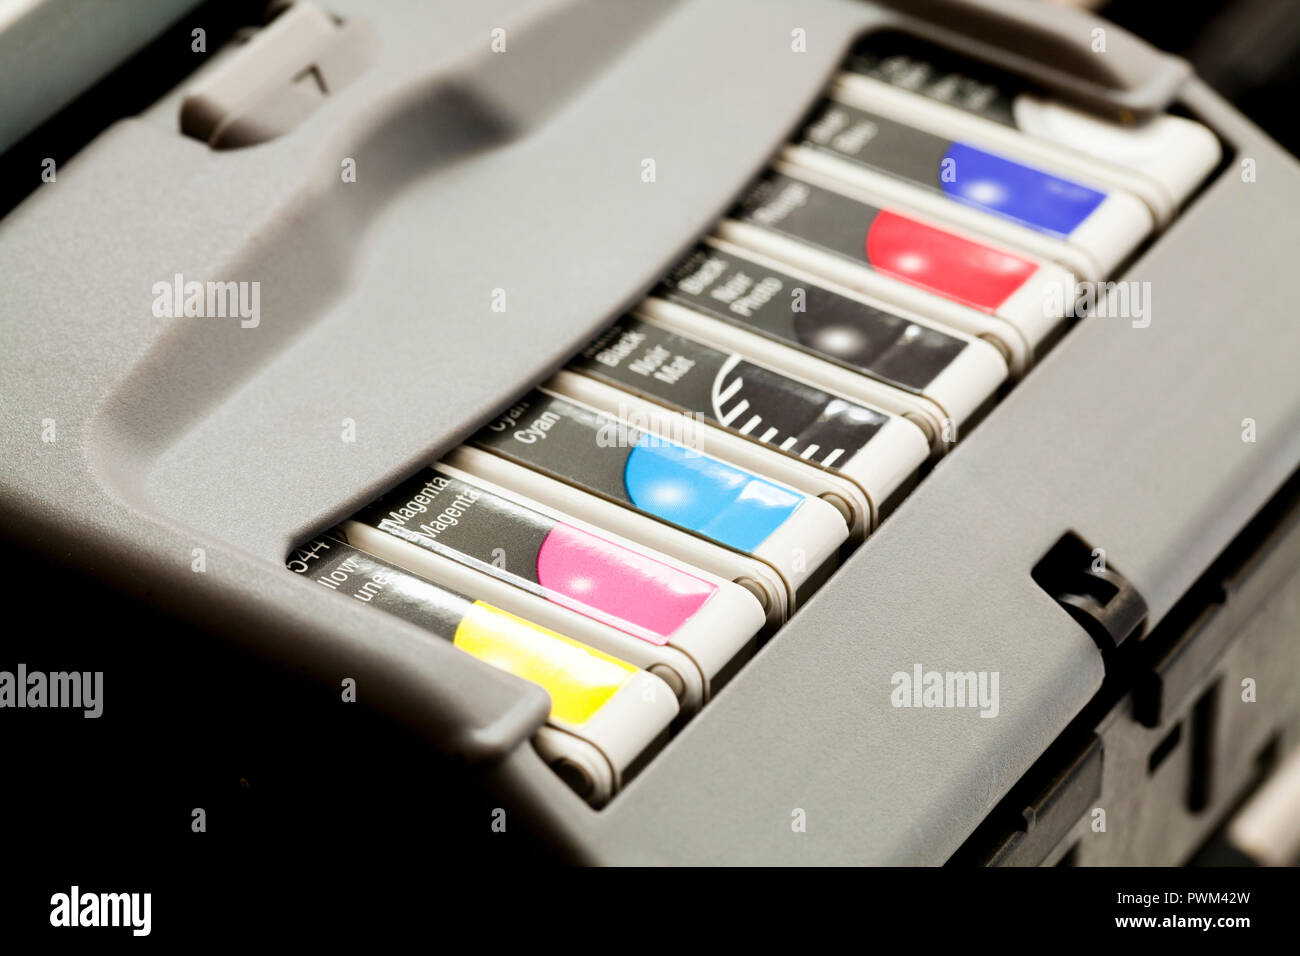 Imprimante couleur jet d'encre cartouches d'encre et tête, Close up - USA Banque D'Images